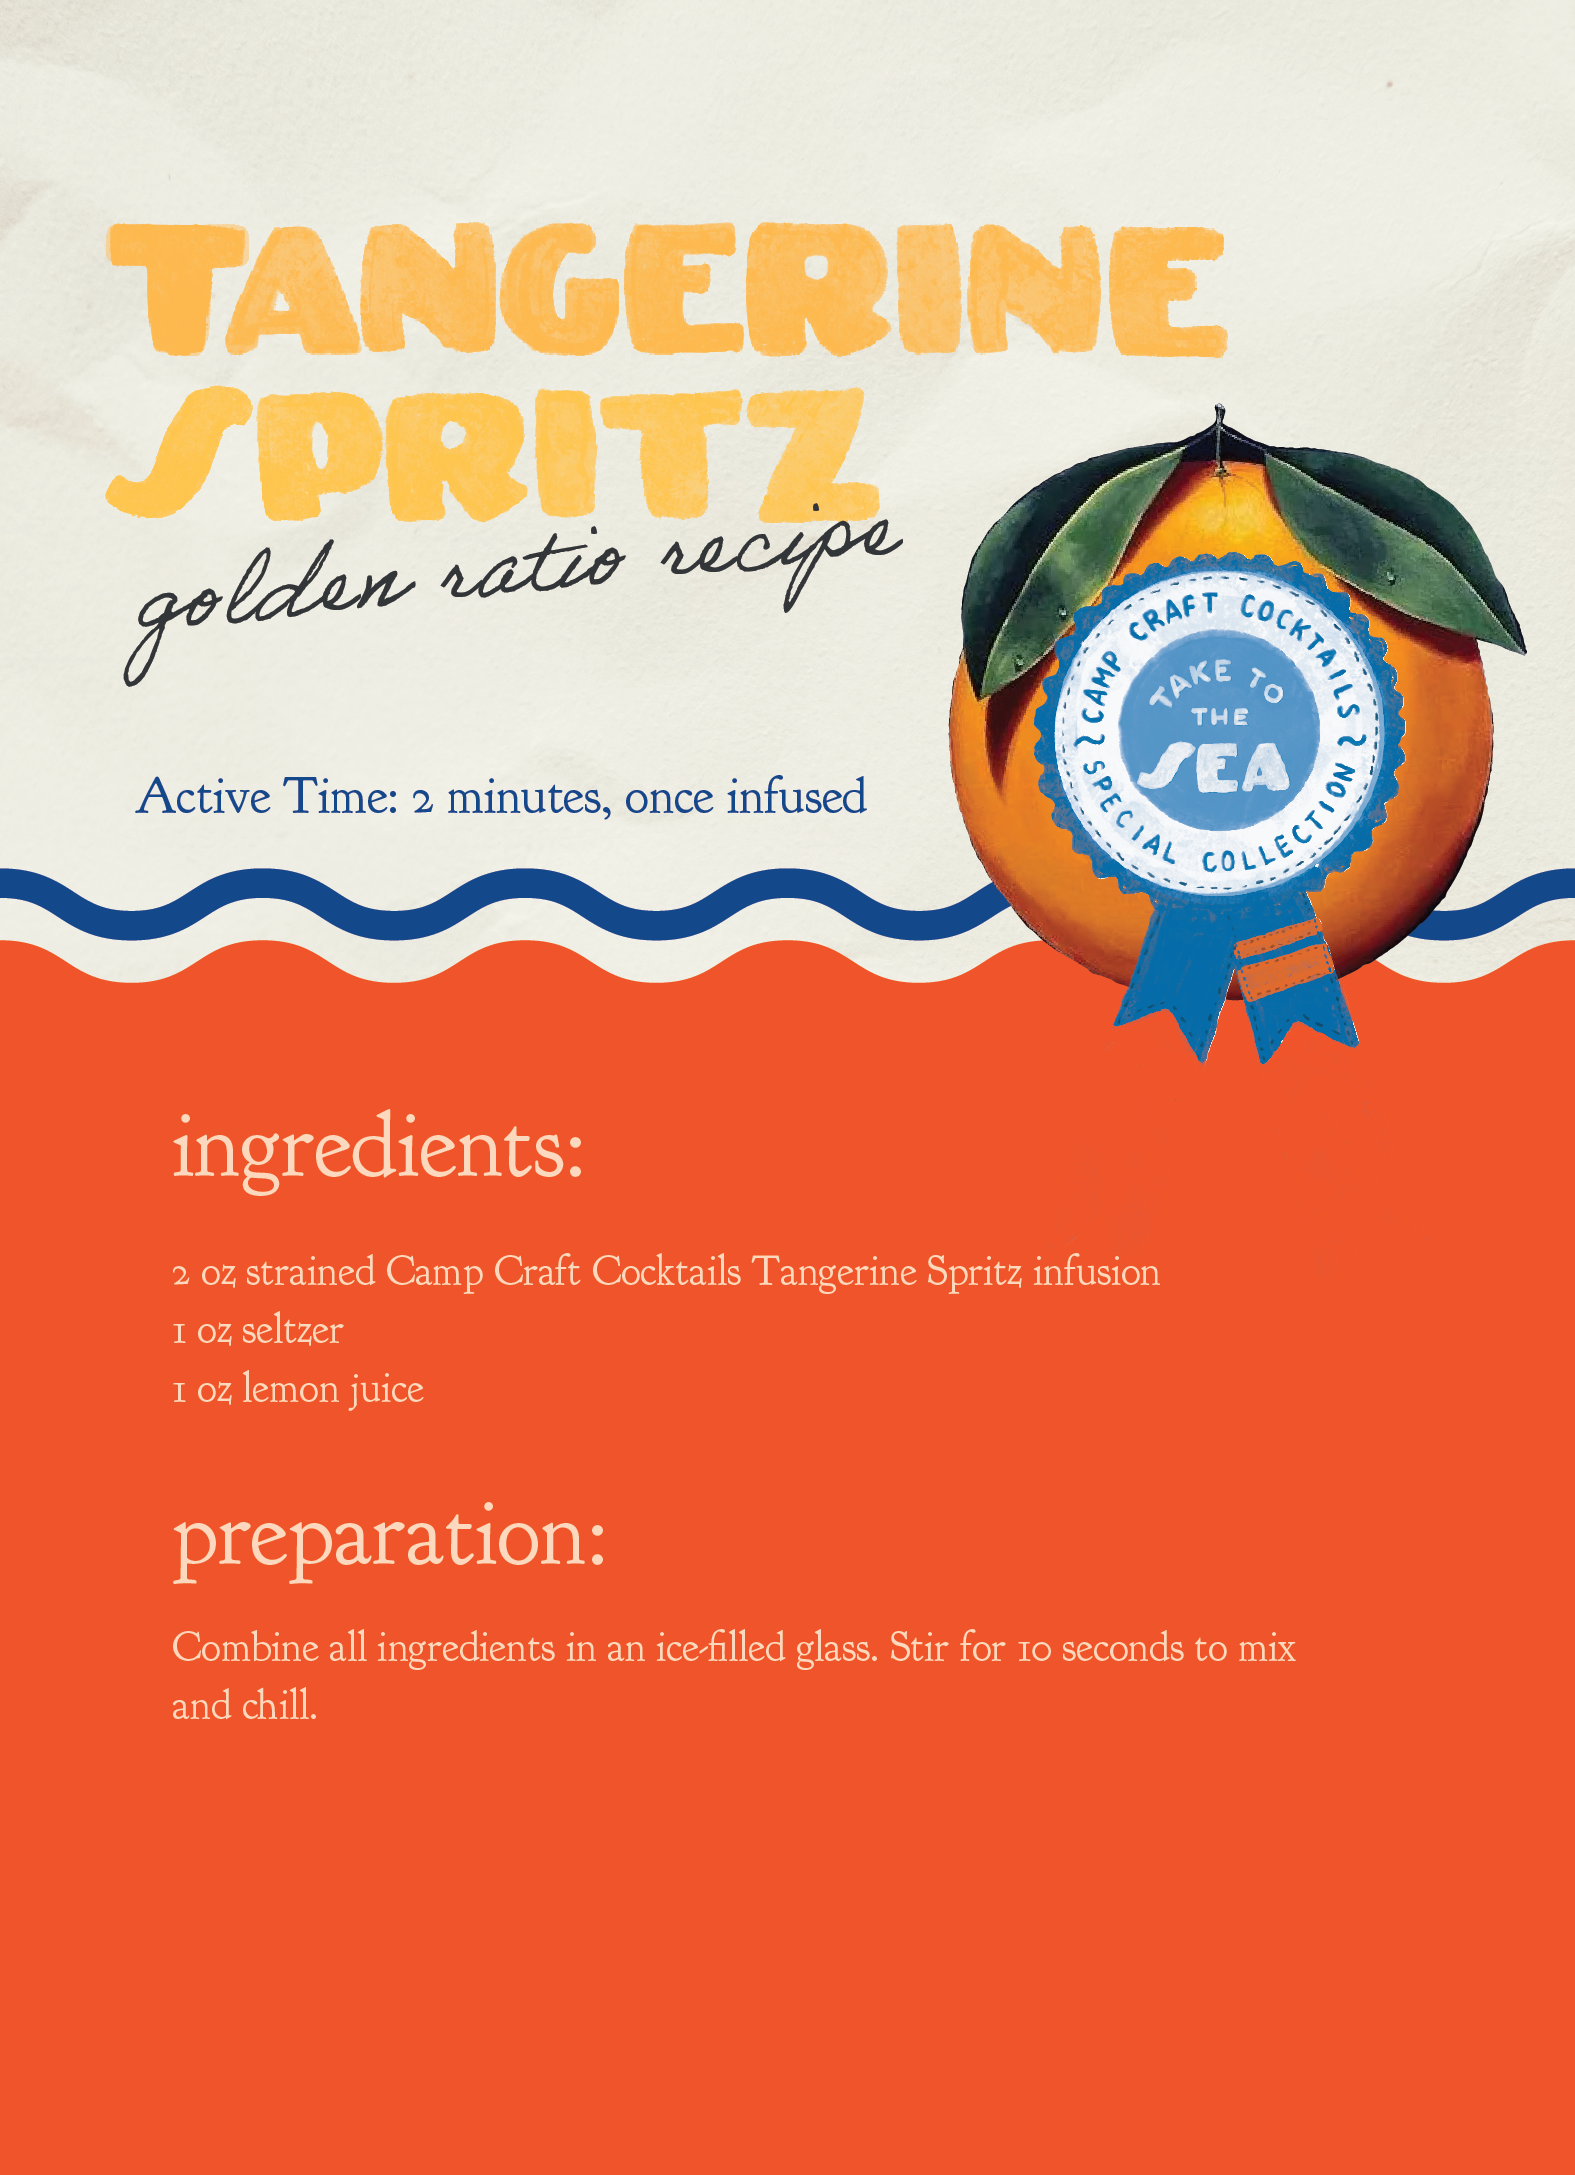 Tangerine Spritz Craft Cocktail